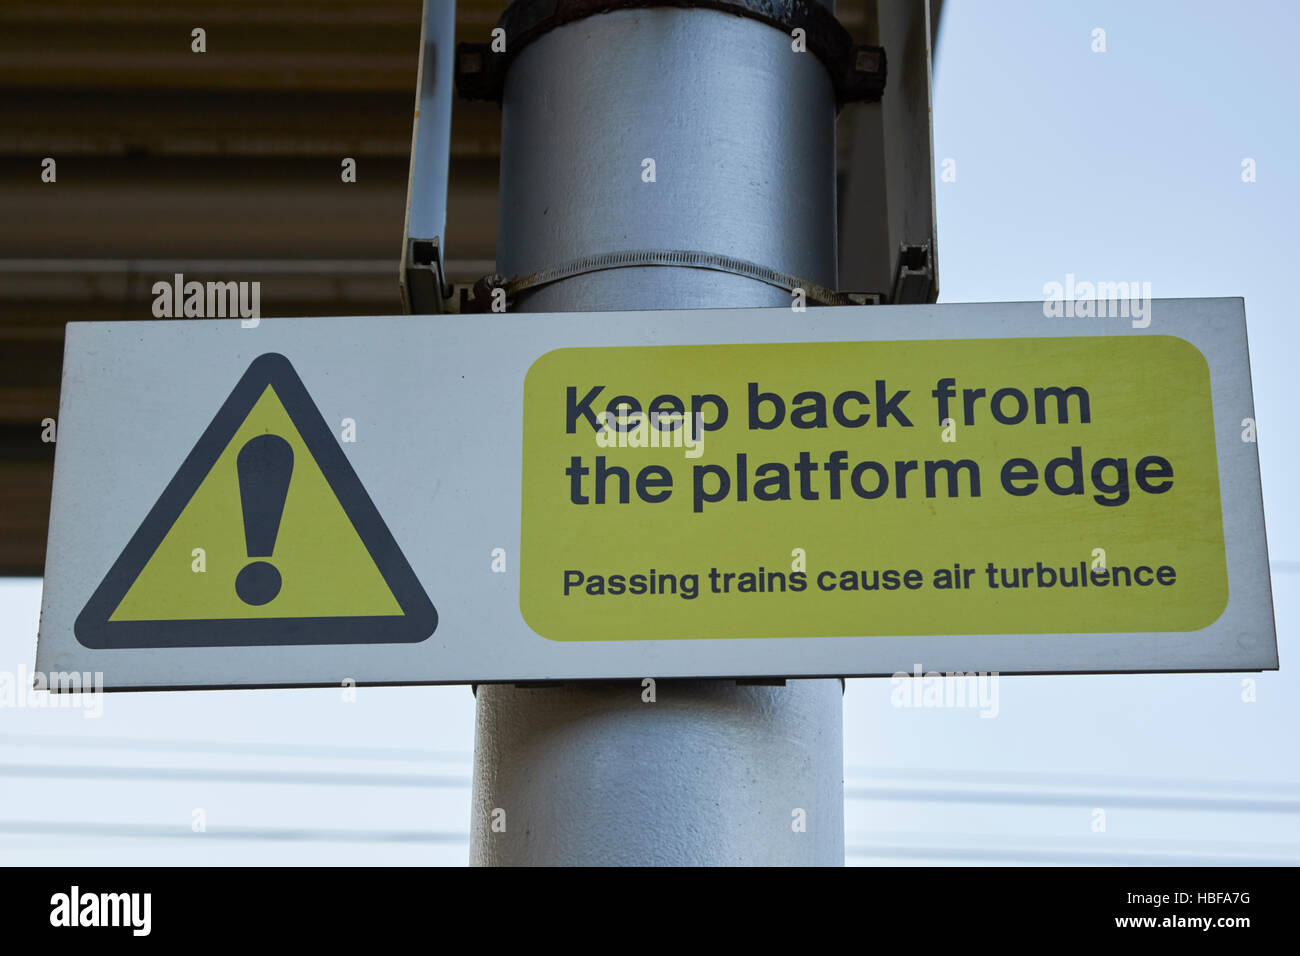 Panneau d'avertissement de la plate-forme de la gare de retour de garder le bord de la plate-forme le passage des trains de la turbulence de l'air Banque D'Images